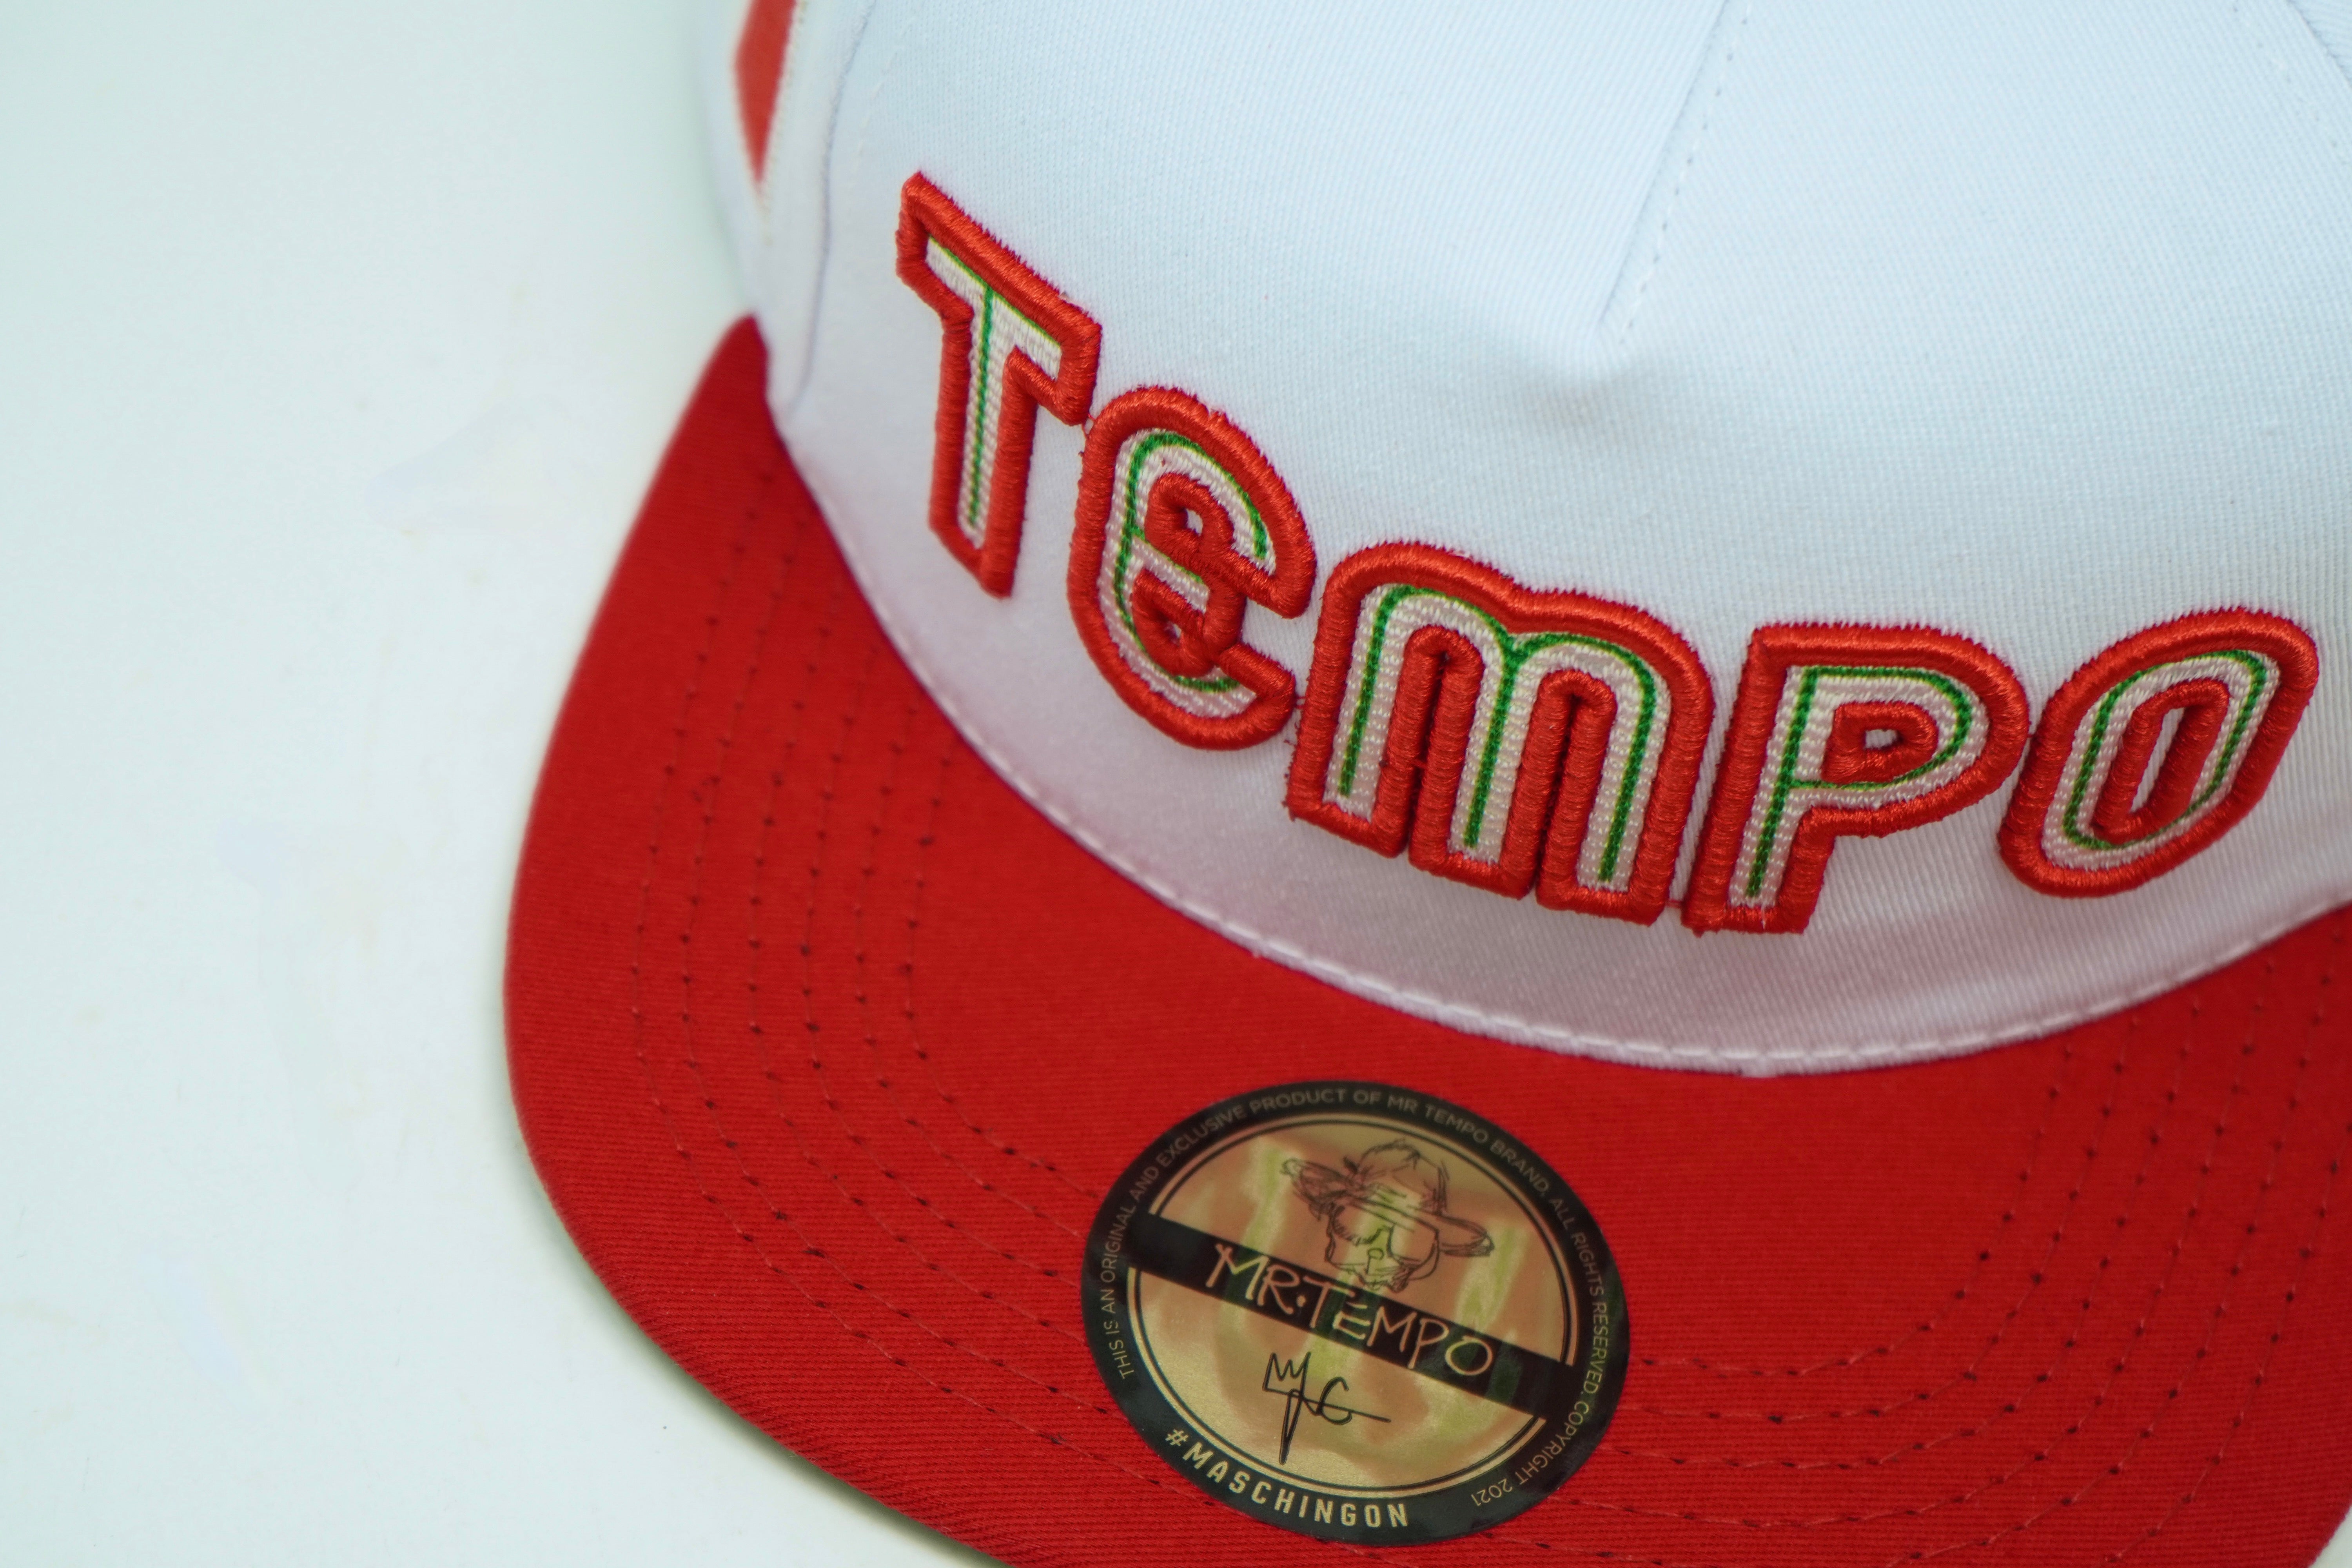 Mr.Tempo White/Red Hat